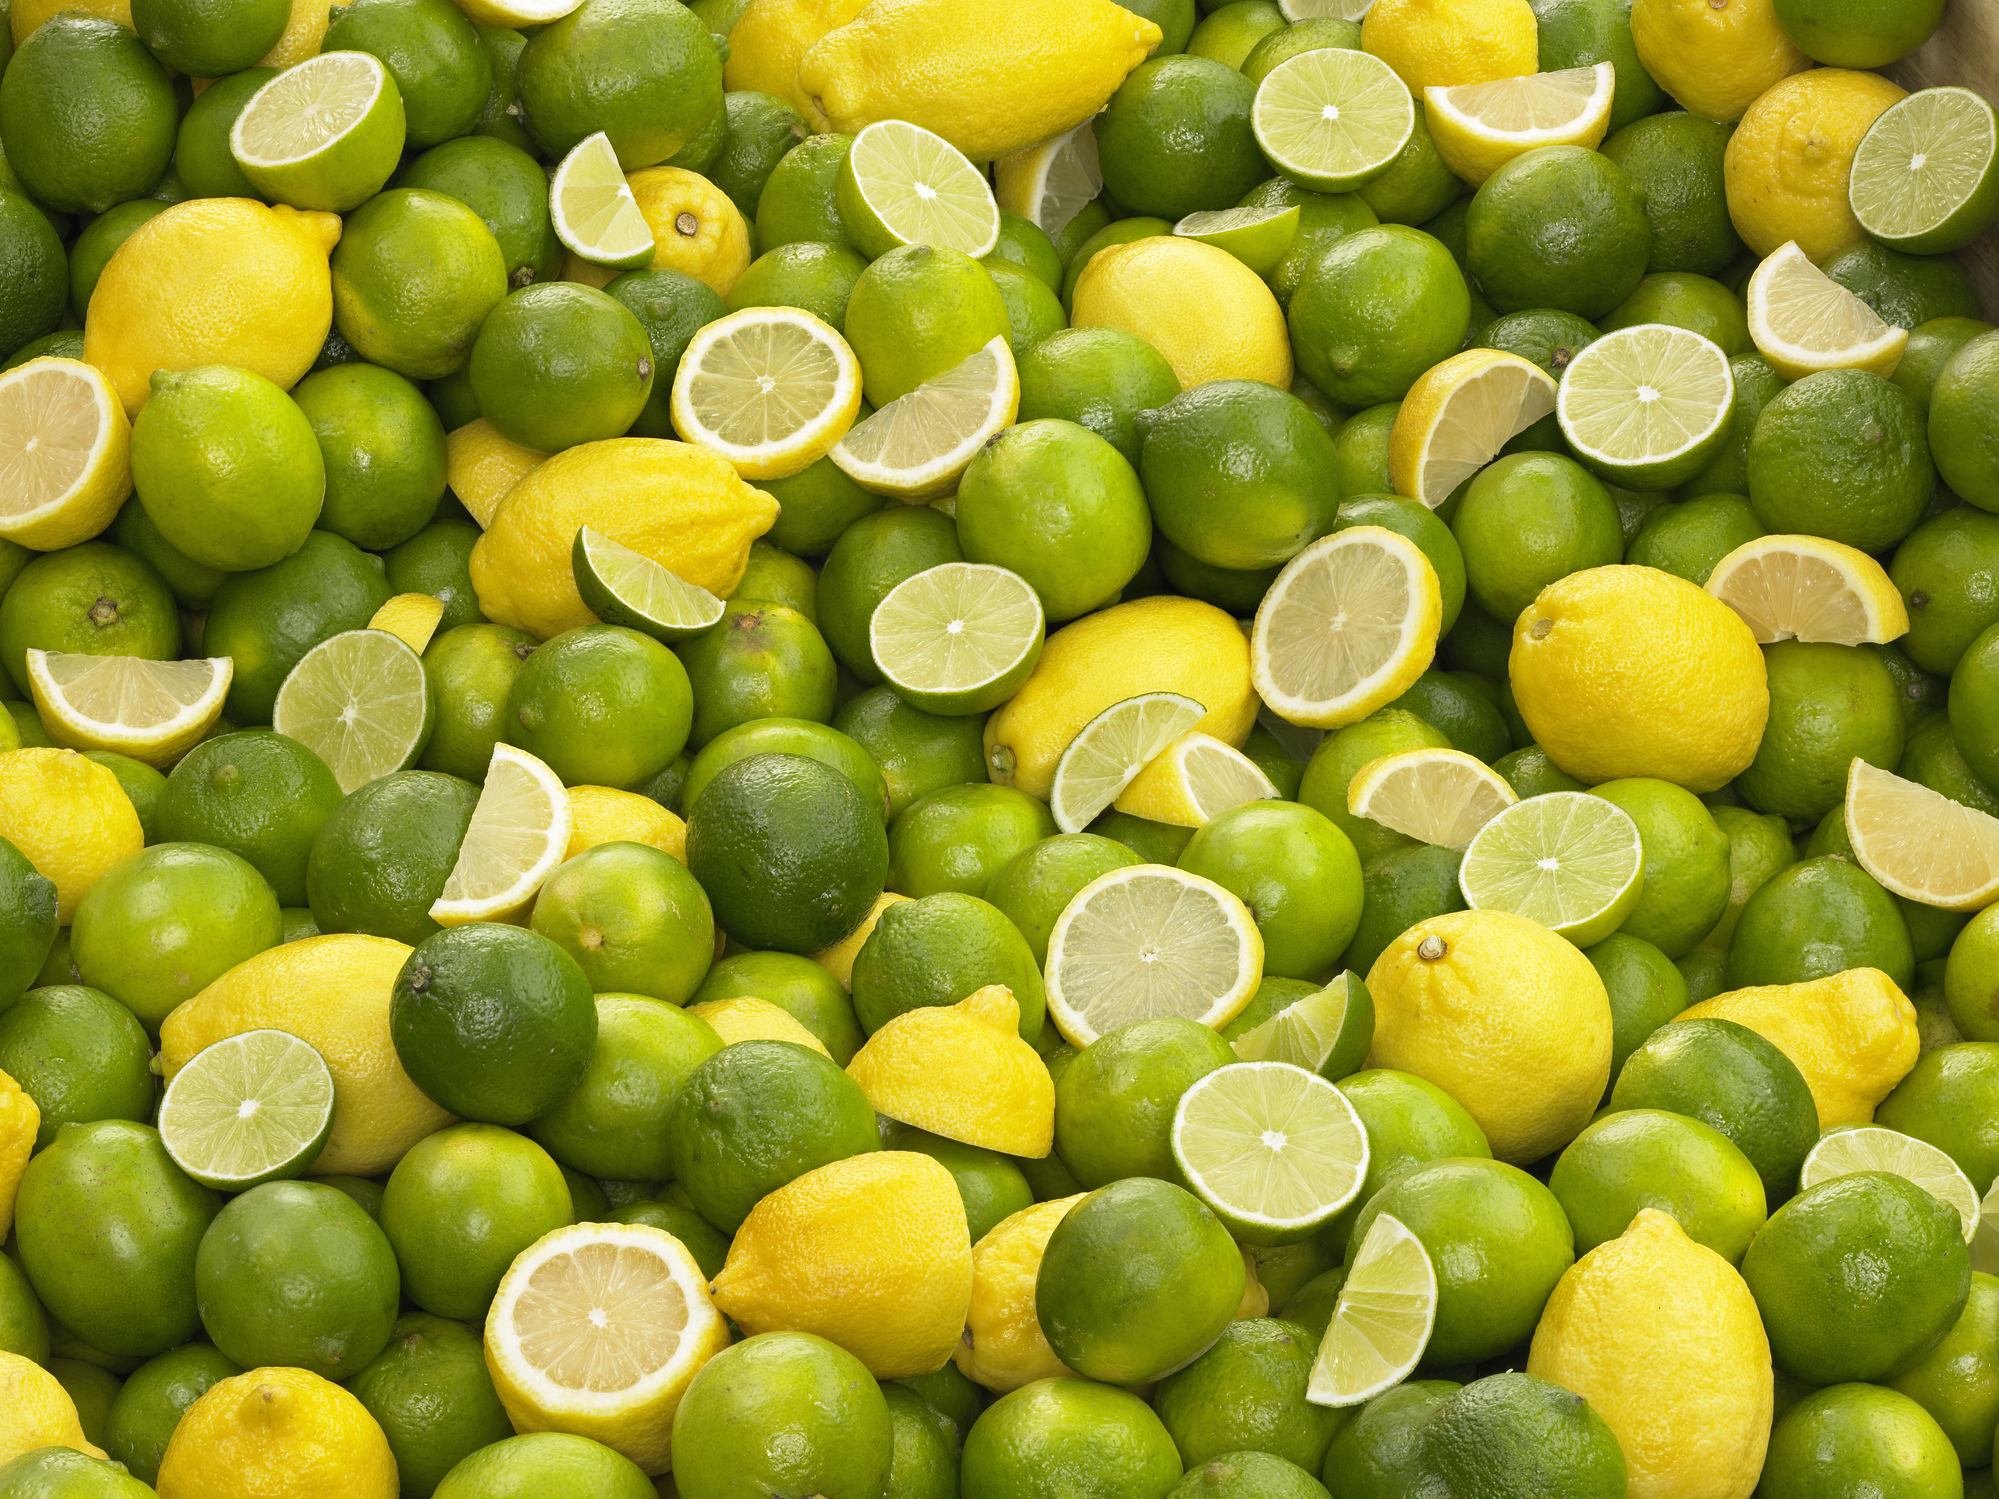 Qué riesgos hay al consumir ácido cítrico como reemplazo del limón?, Salud